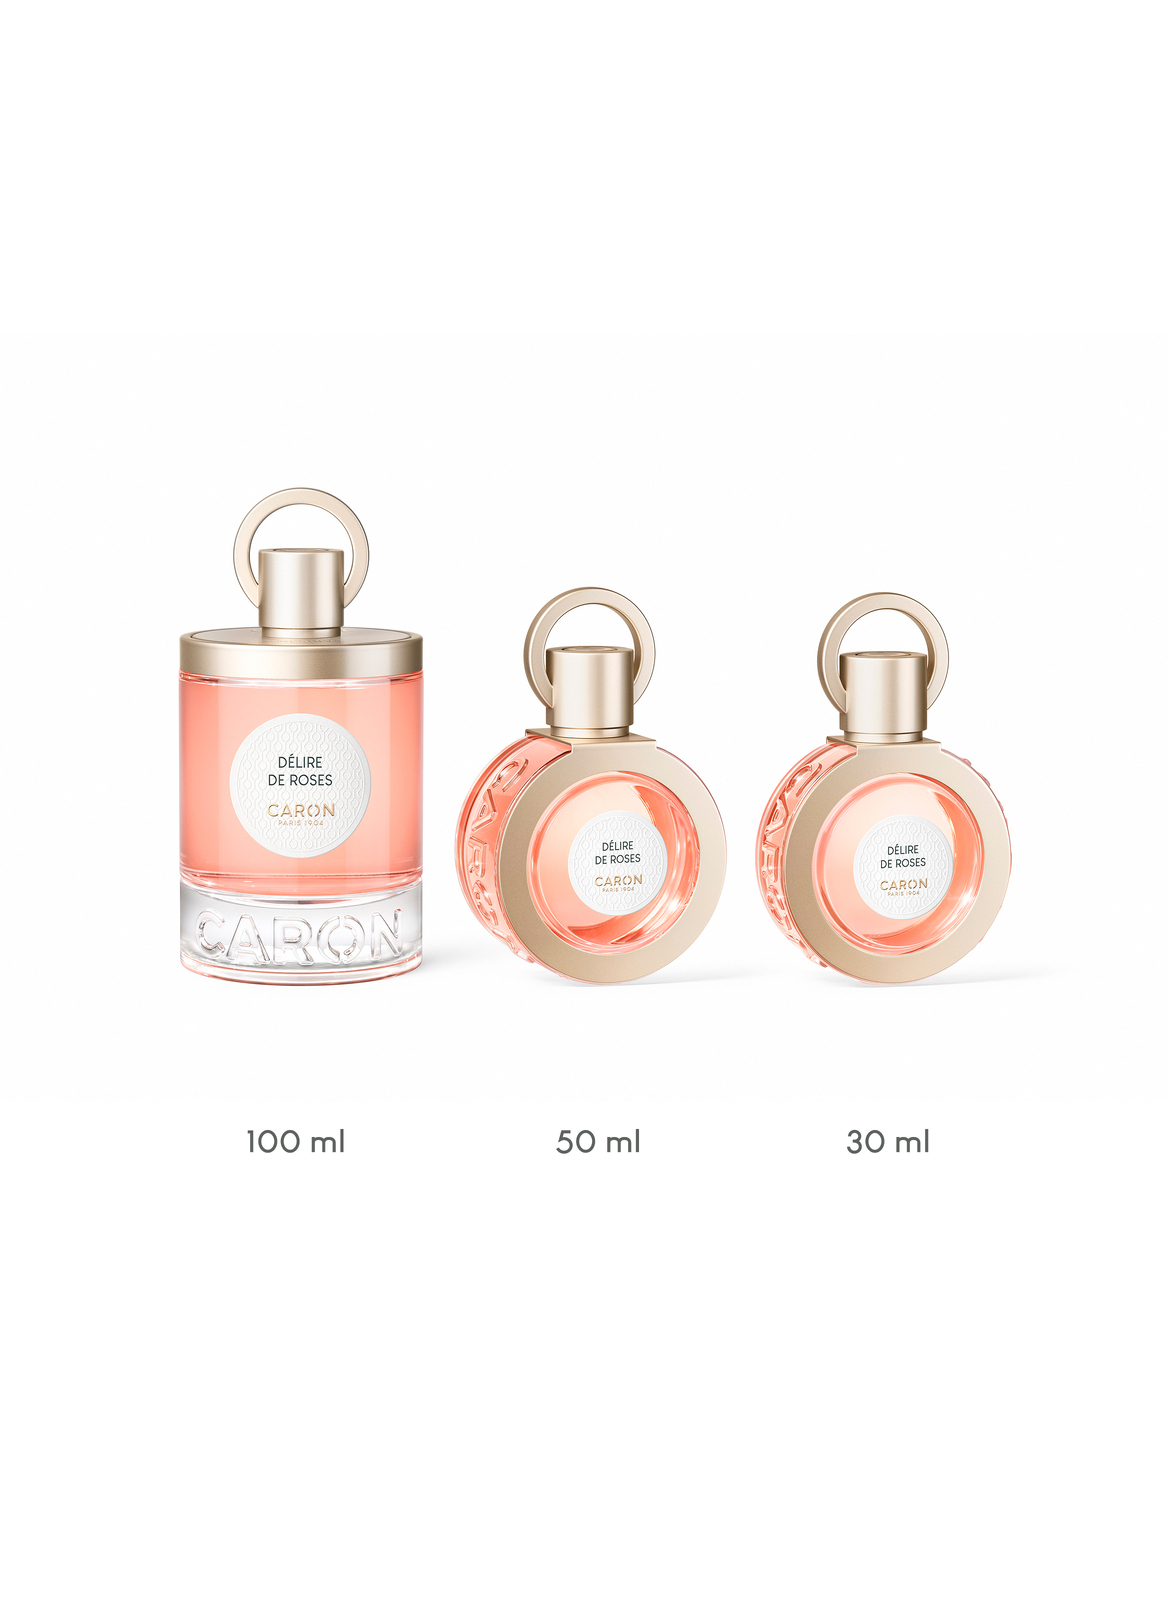 CARON Delire De Roses Perfume 30ml Refillable